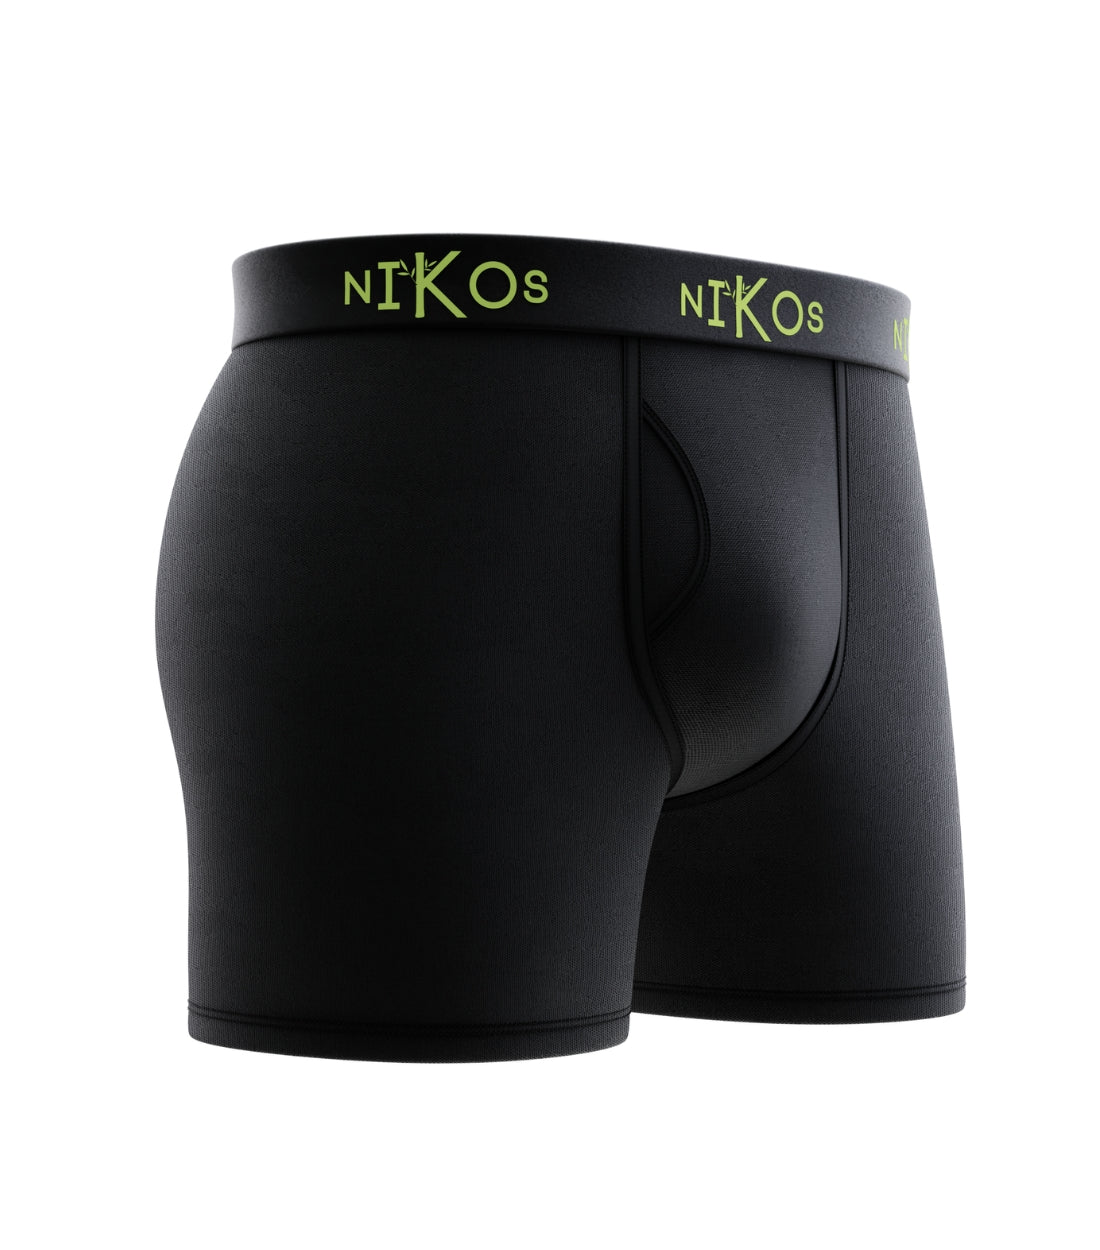 Black Nikos Bamboo Boxer Briefs with green logo